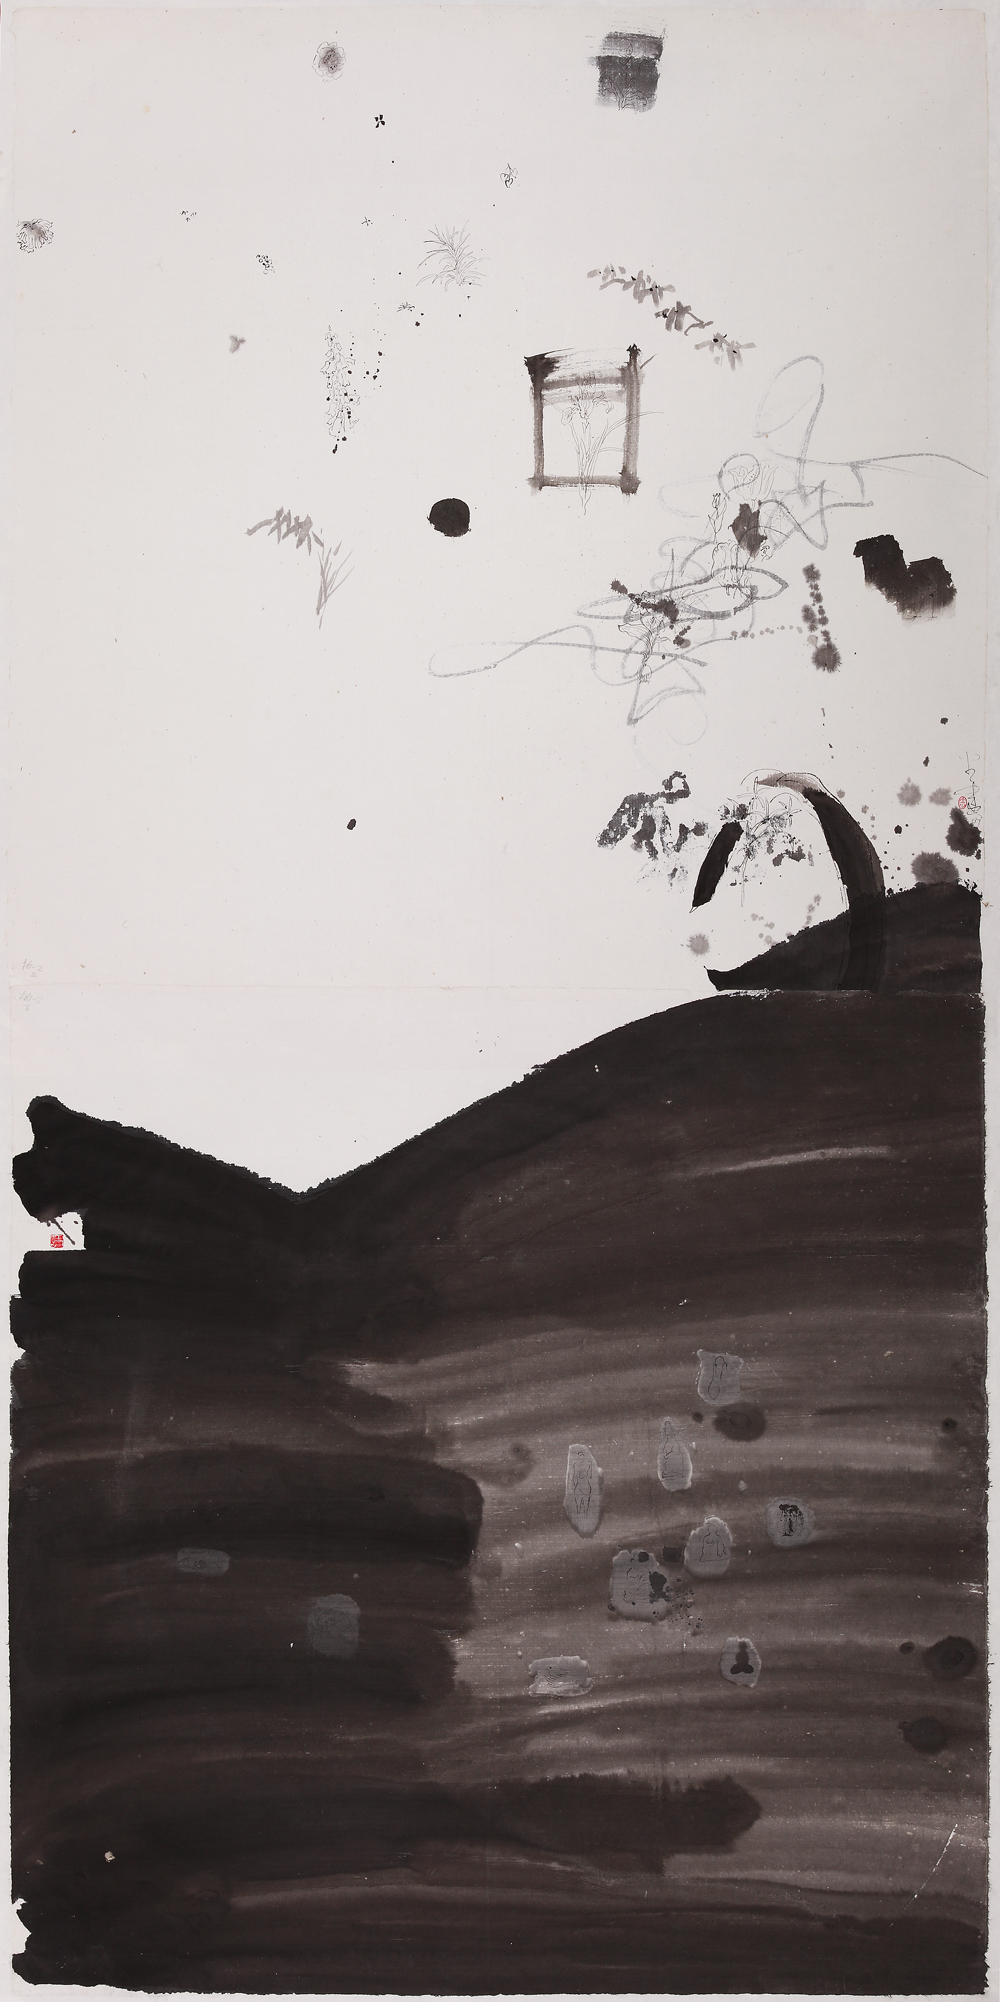 蒋奇谷JIANG Qigu  《兰梅竹佛图》The Painting of Orchid,Plum,Bamboo and Buddha  100×200cm  纸本水墨Ink On Paper  2007